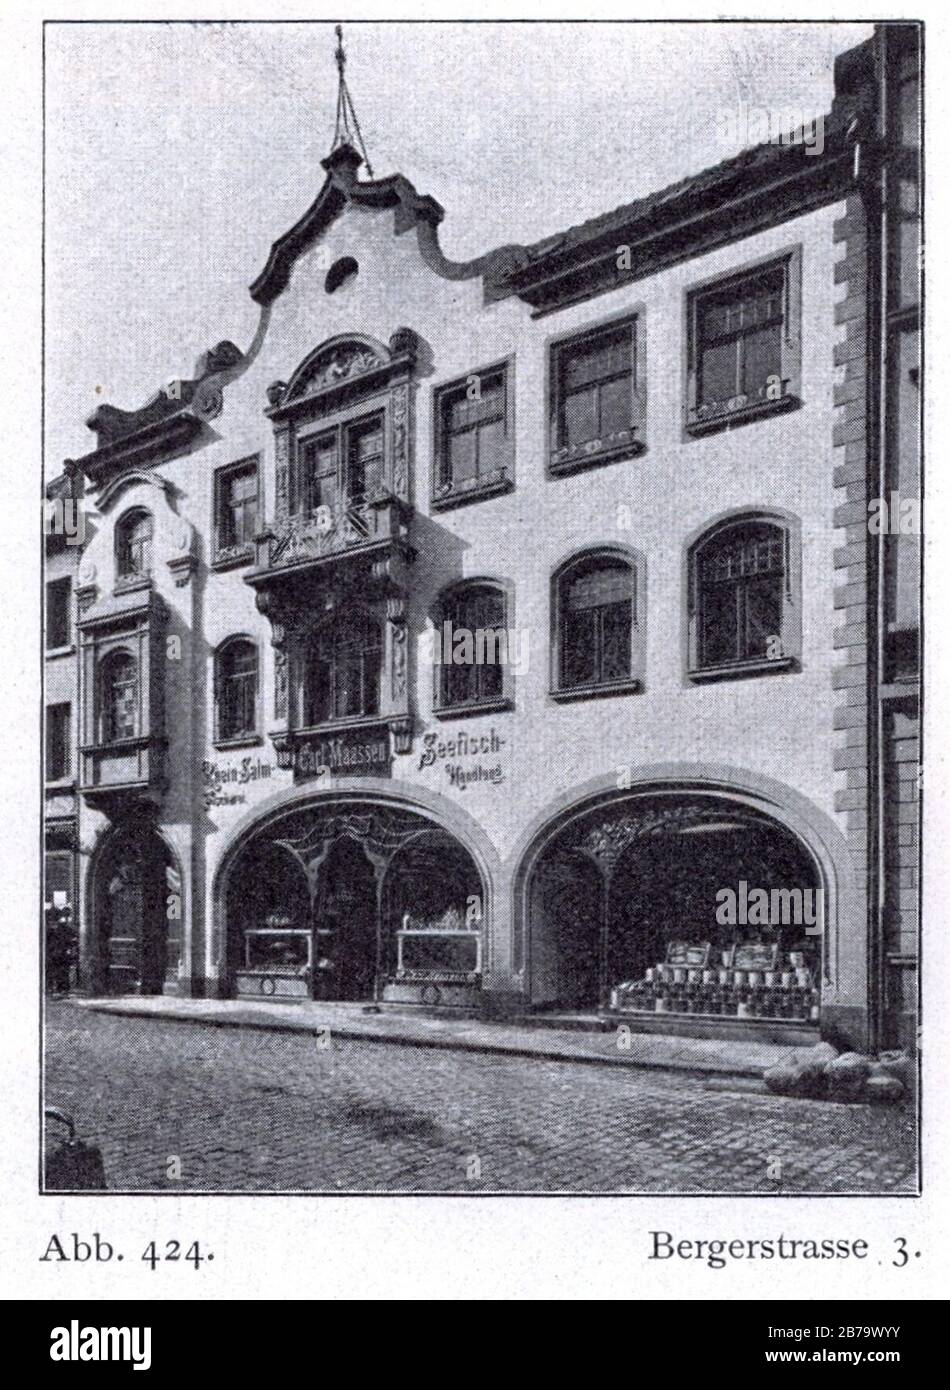 Geschäfshaus Bergerstraße 3 in Düsseldorf, erbaut 1899, Architekt Viktor Wolff, Bauherr Fischhandlung Karl Maaßen. Stock Photo